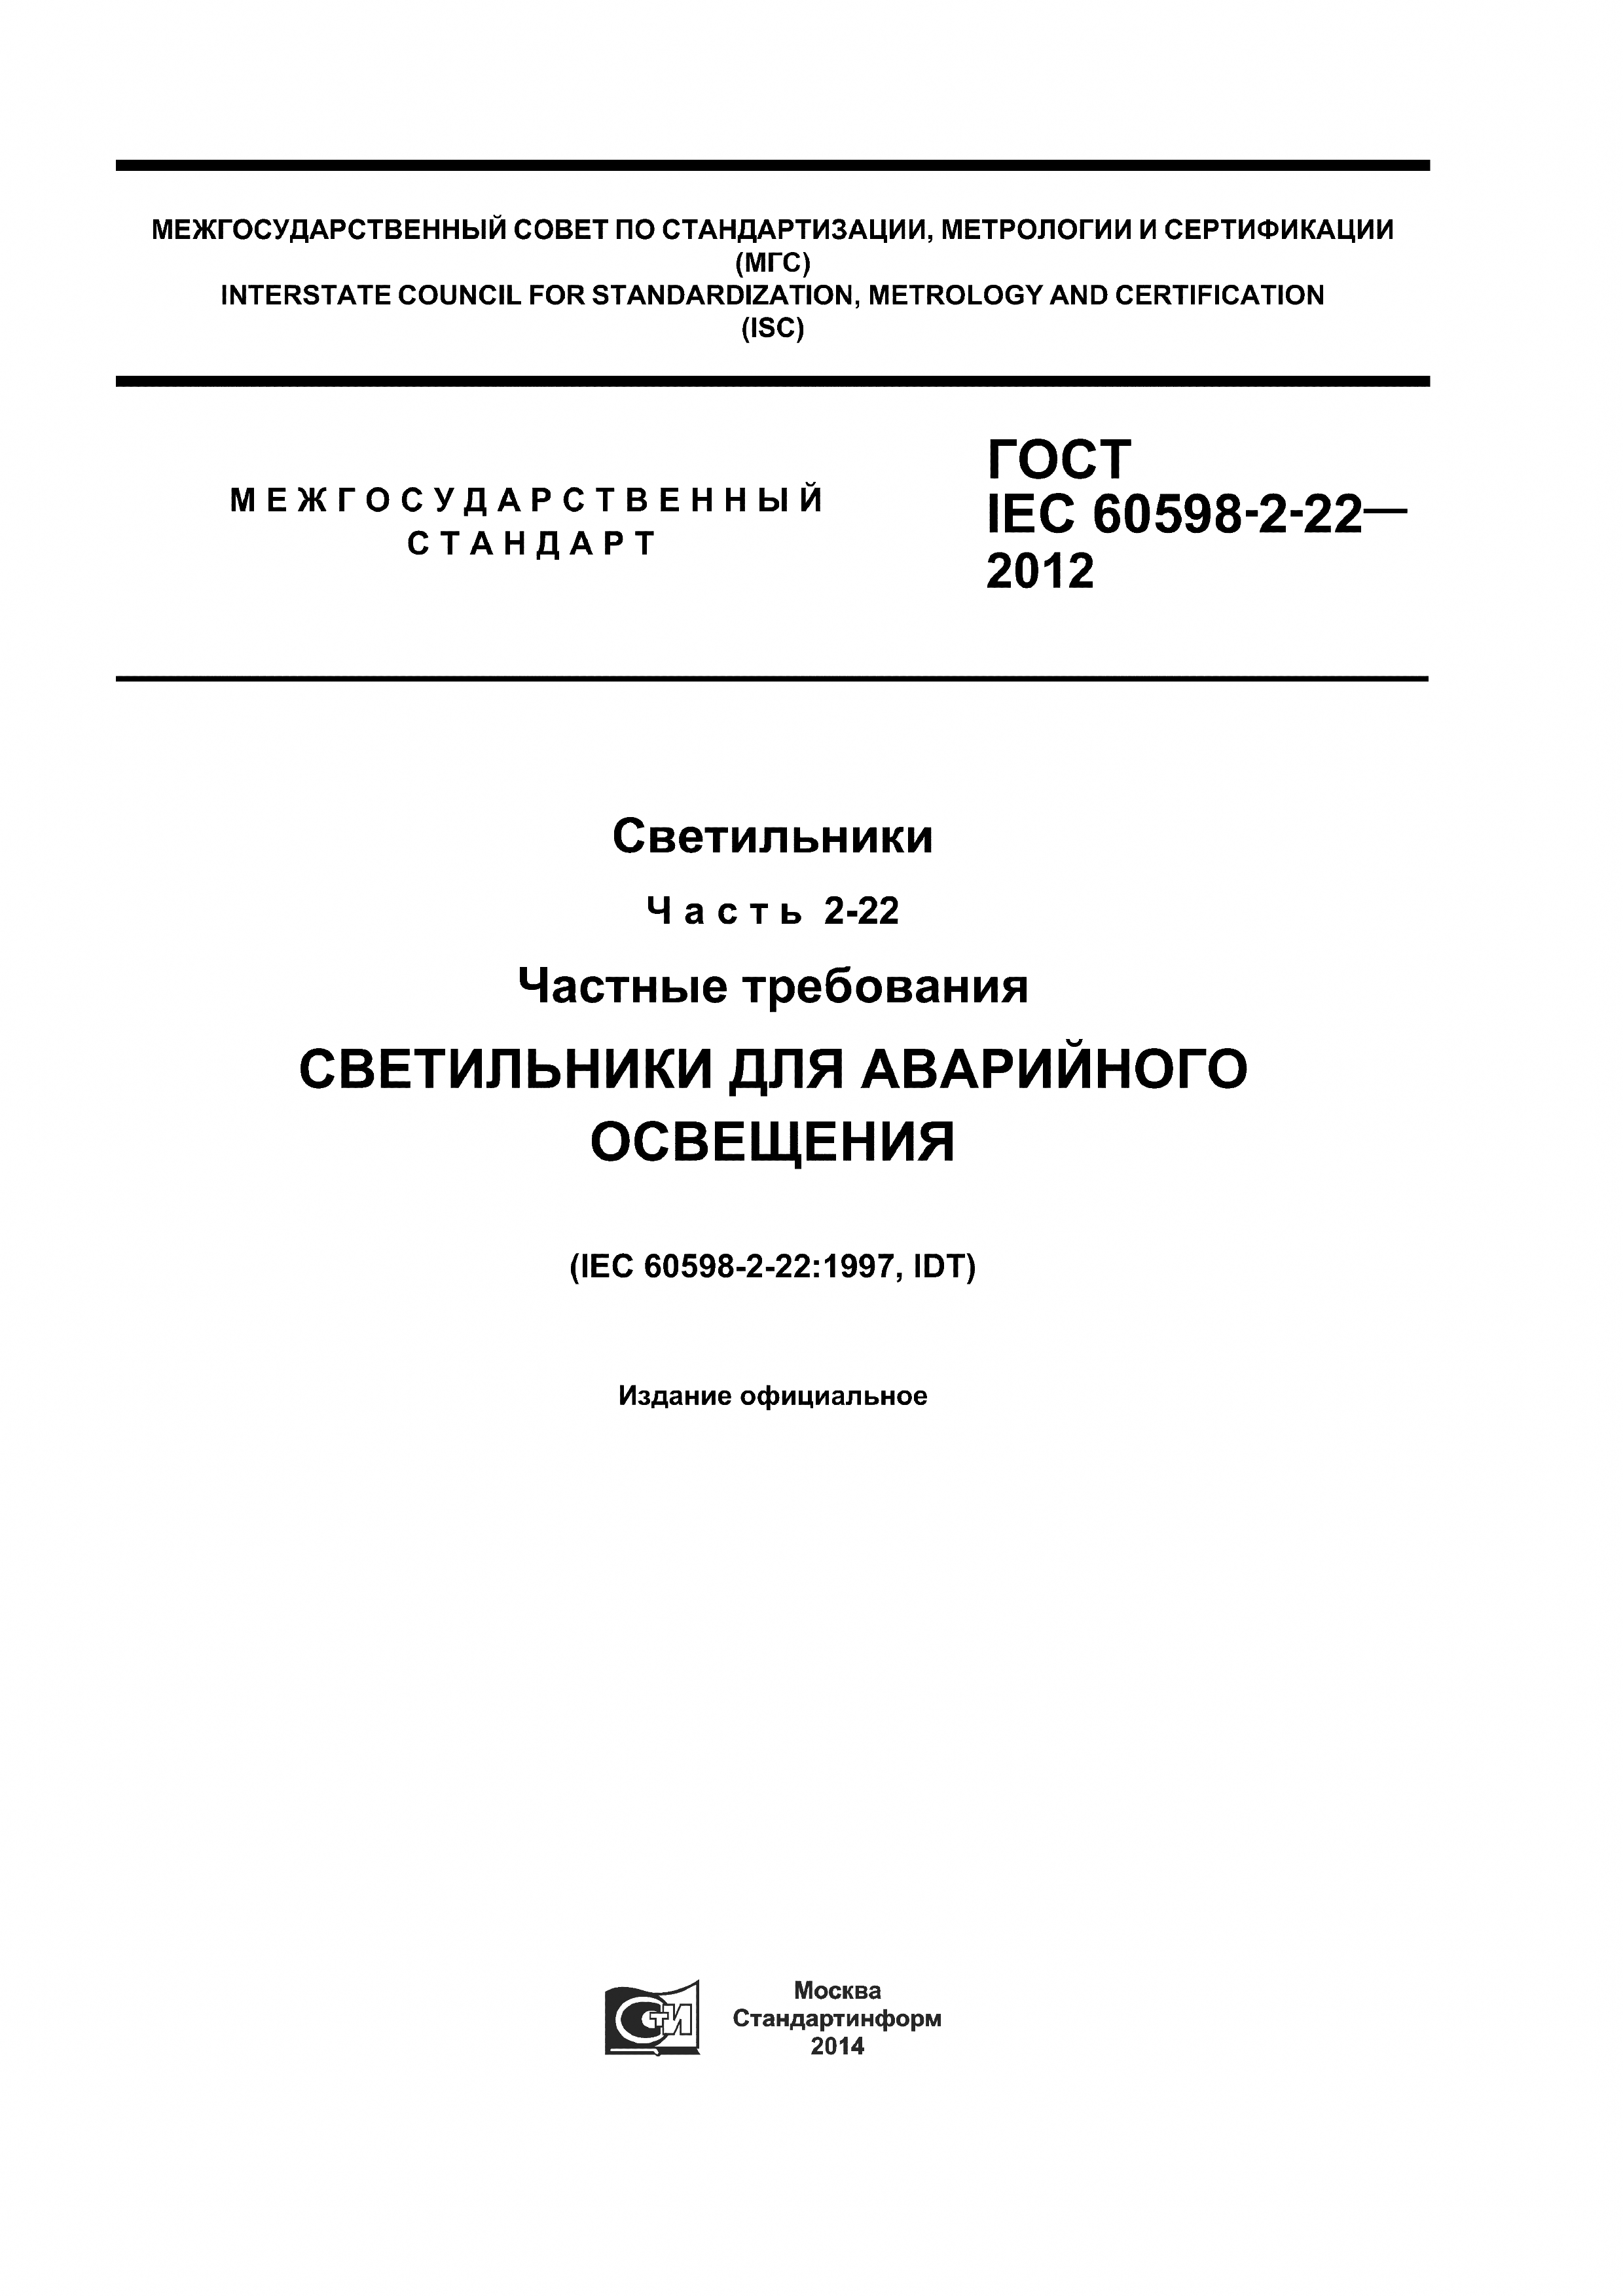 ГОСТ IEC 60598-2-22-2012